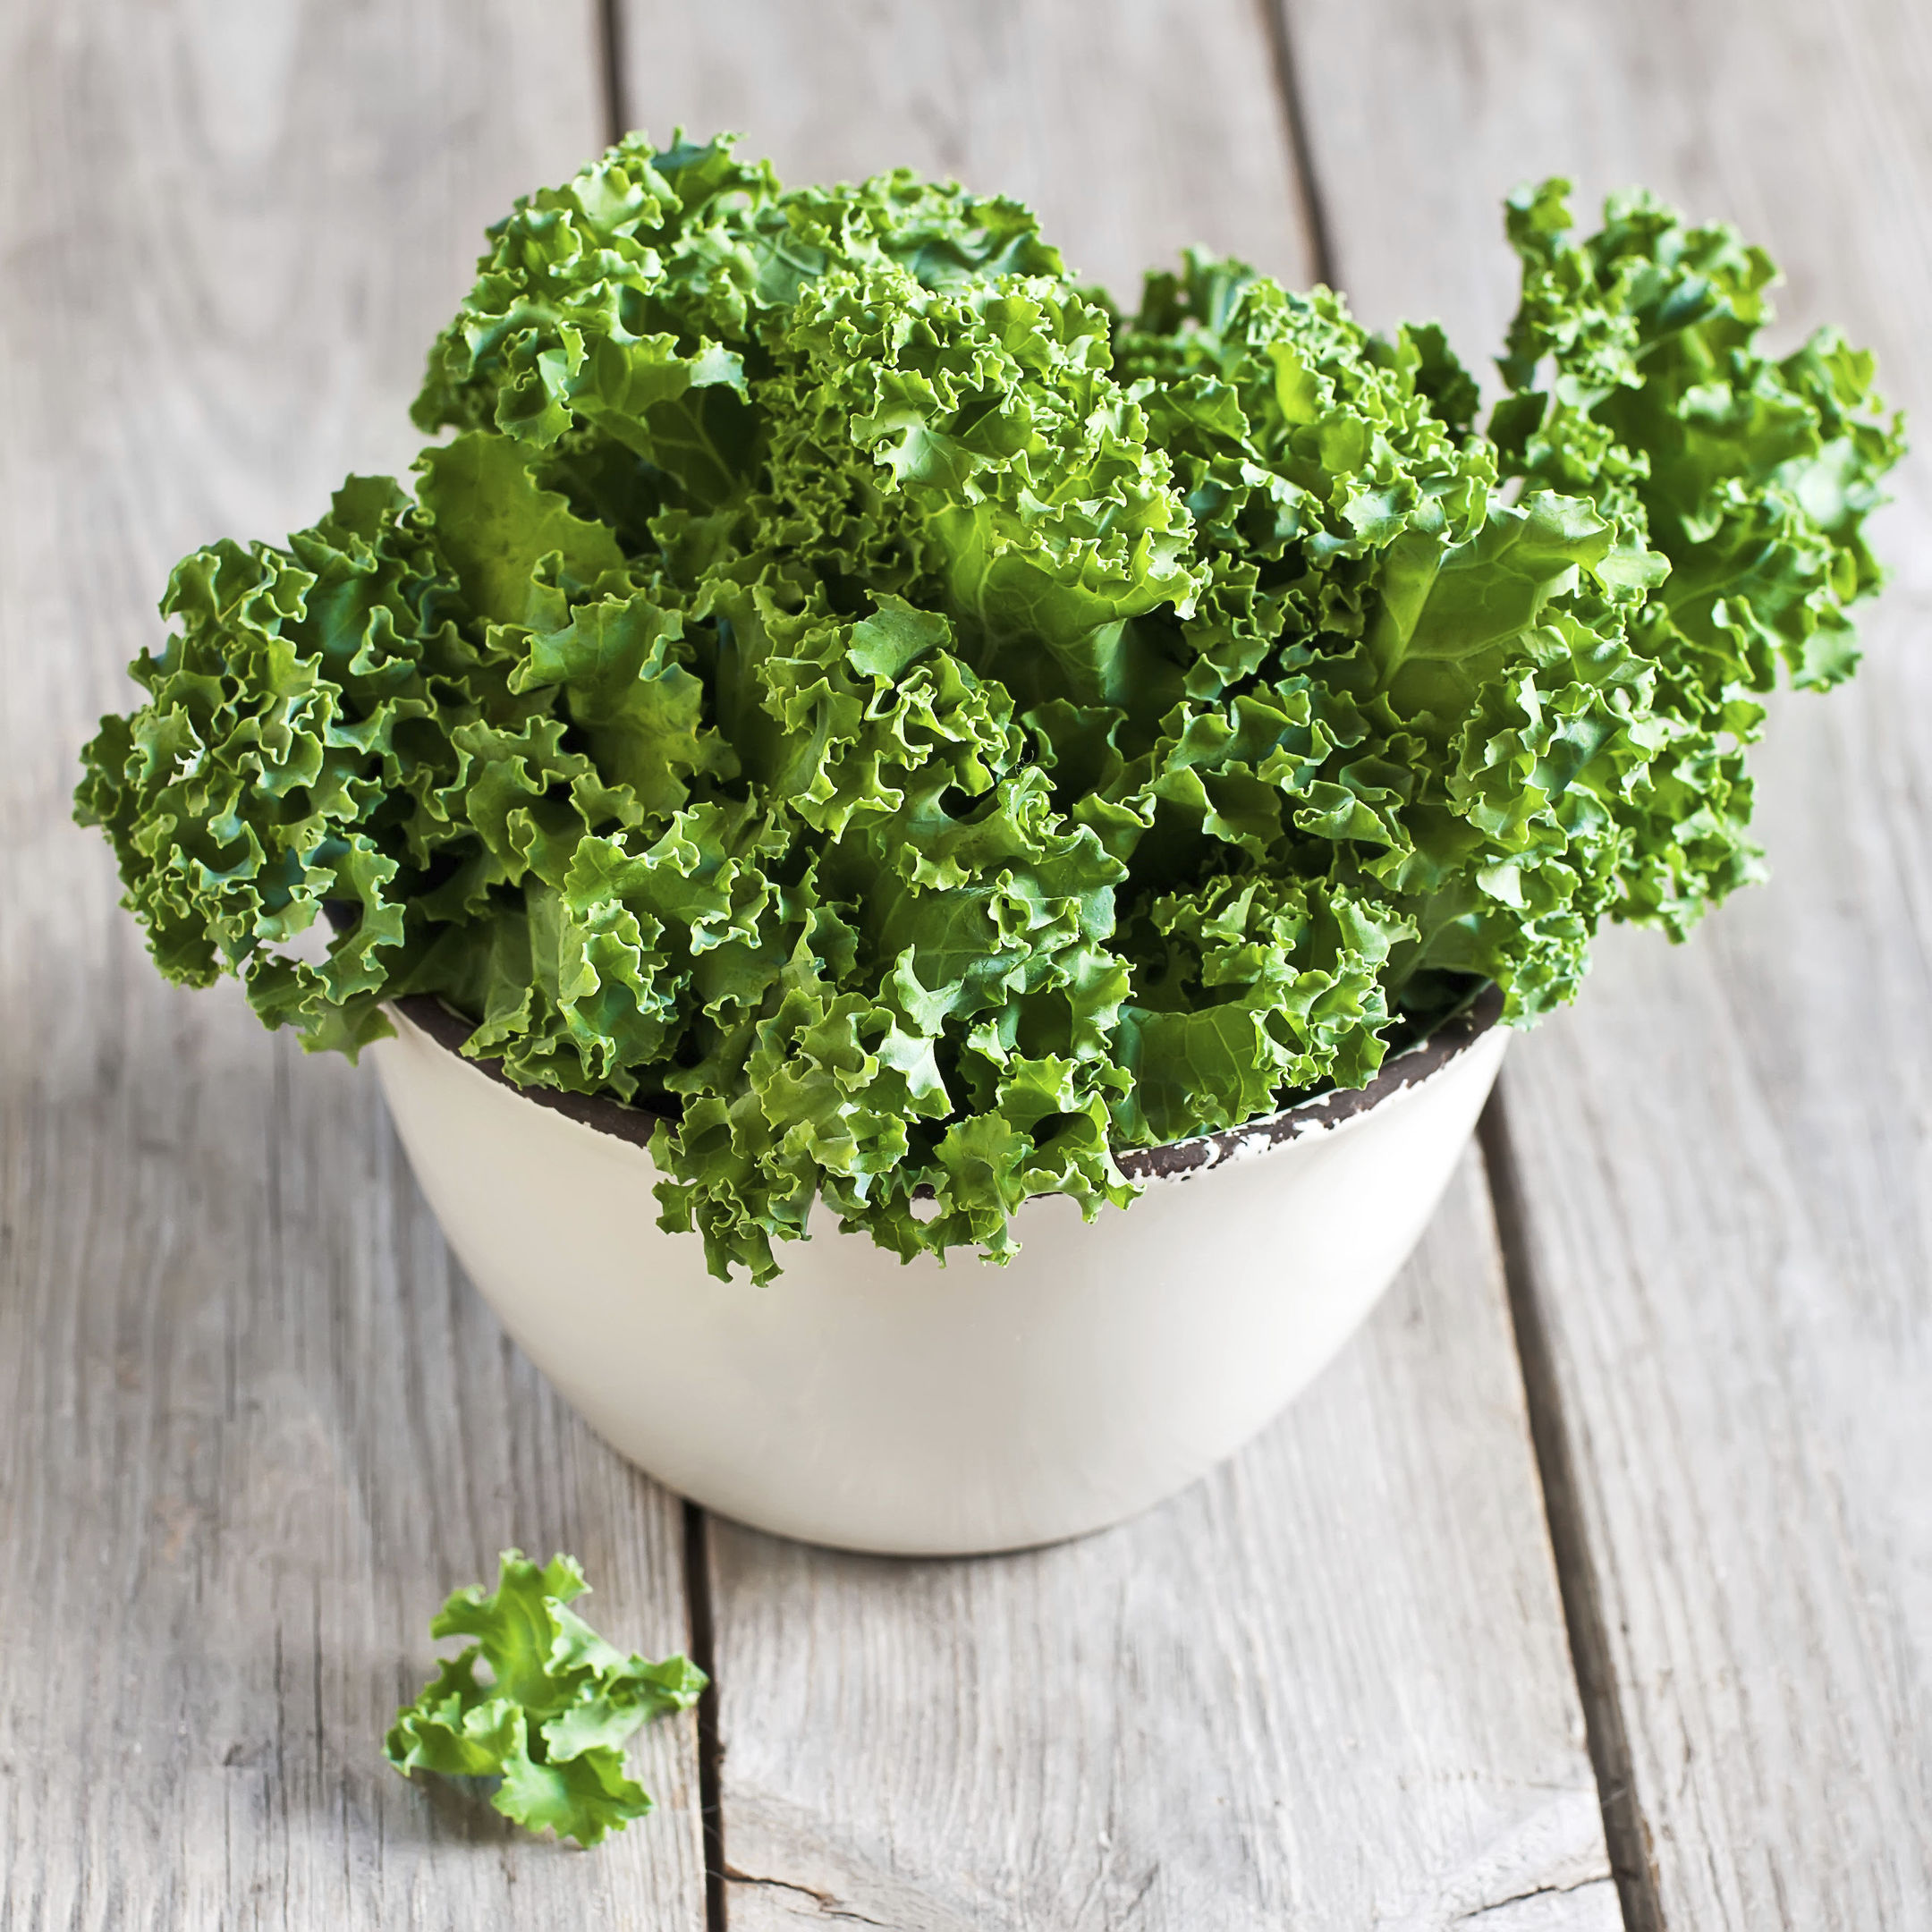 A bowl of kale